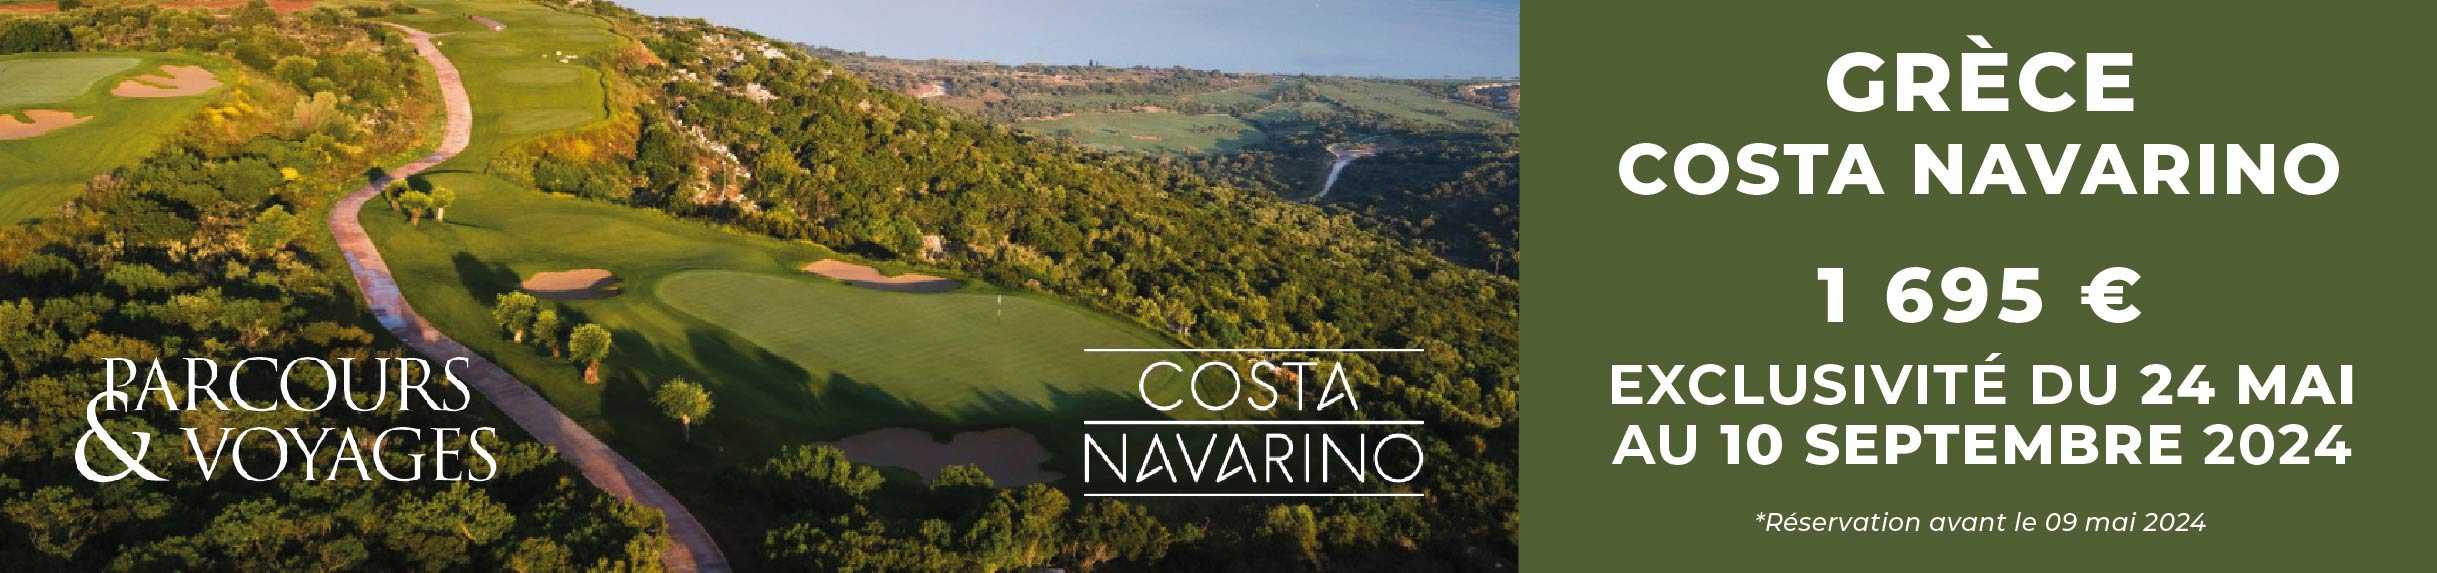 Parcours Voyages D01 2024 – Costa Navarino – Bannière large